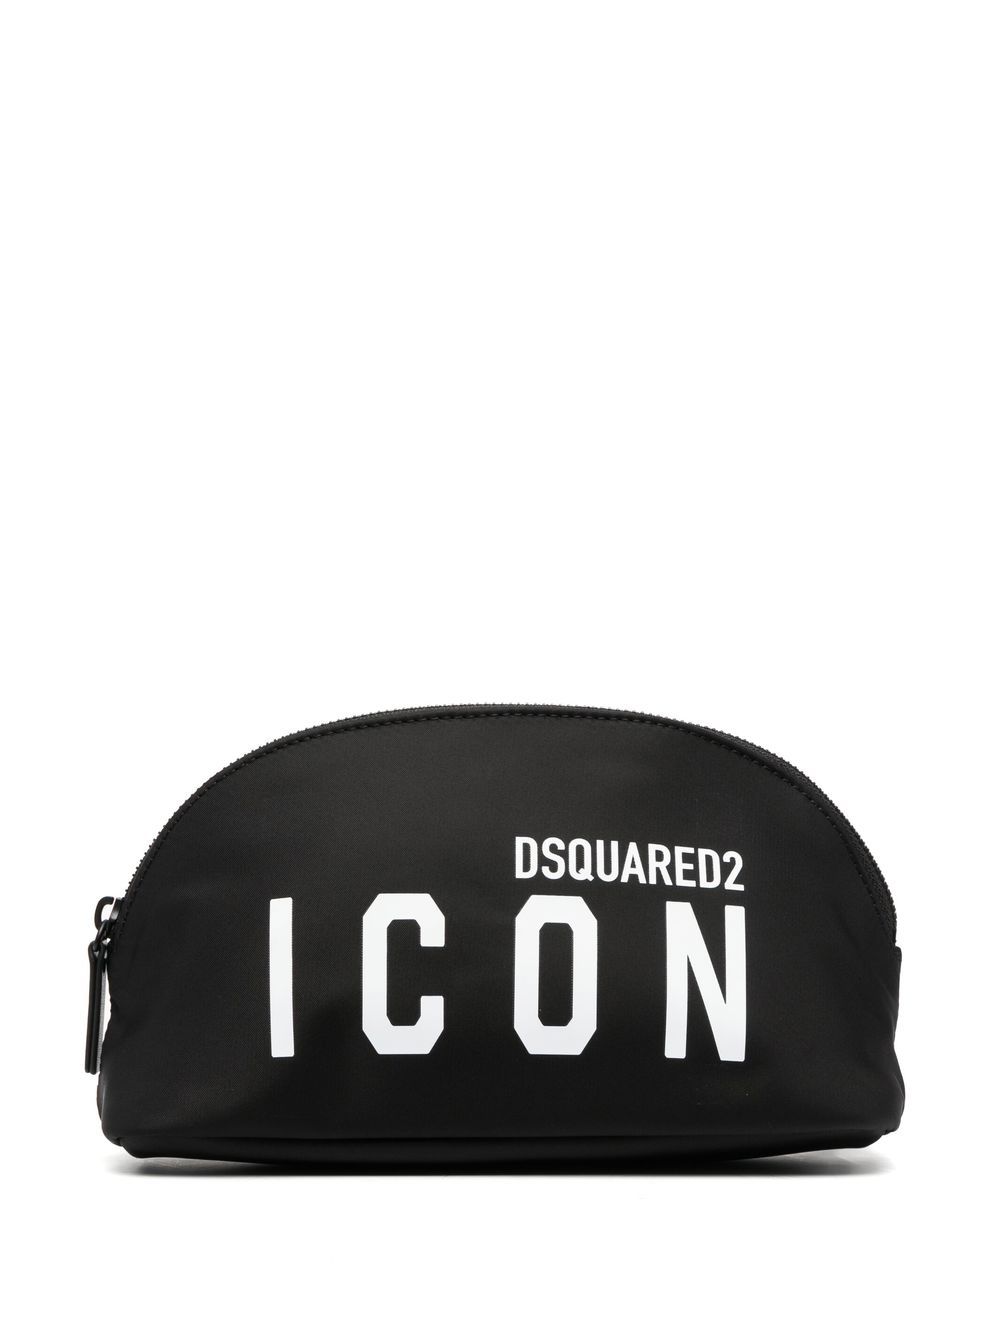 Image 1 of Dsquared2 logo-print leather-trimmed makeup bag